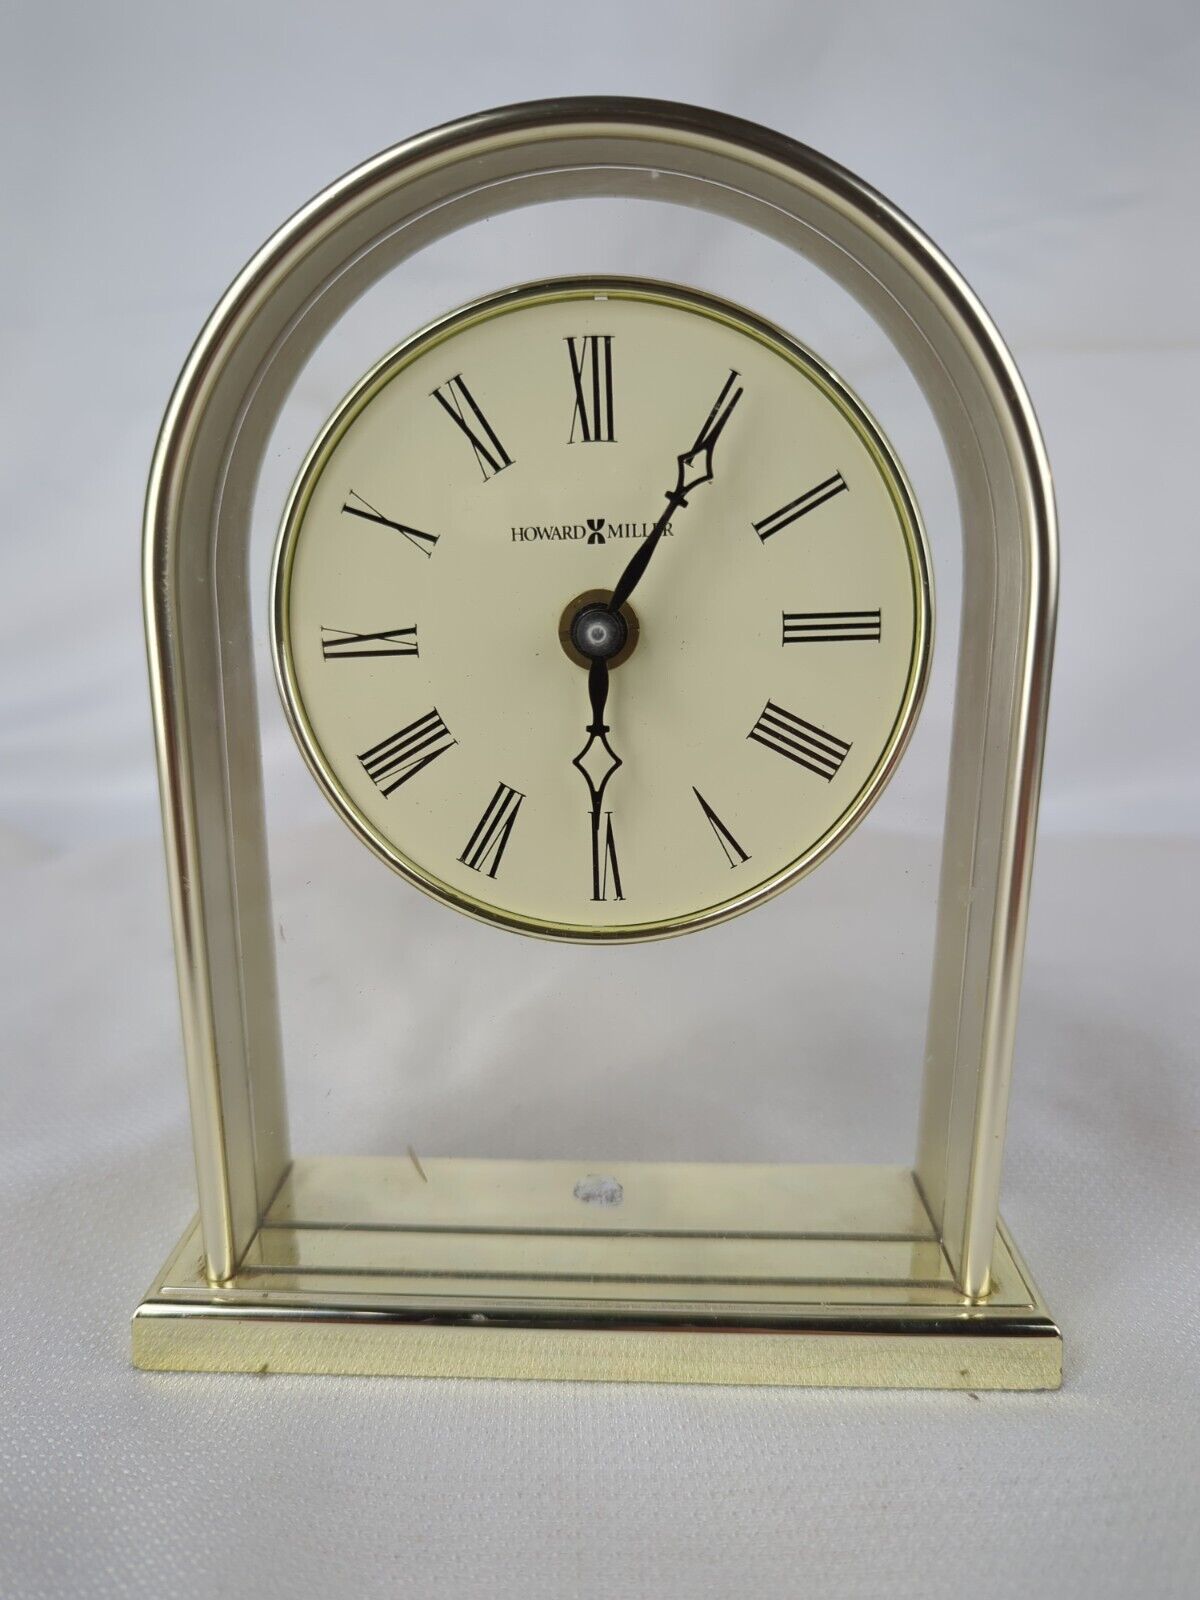 Howard Miller Model 613-118A Desk Mantle Clock Gold Finish Quartz